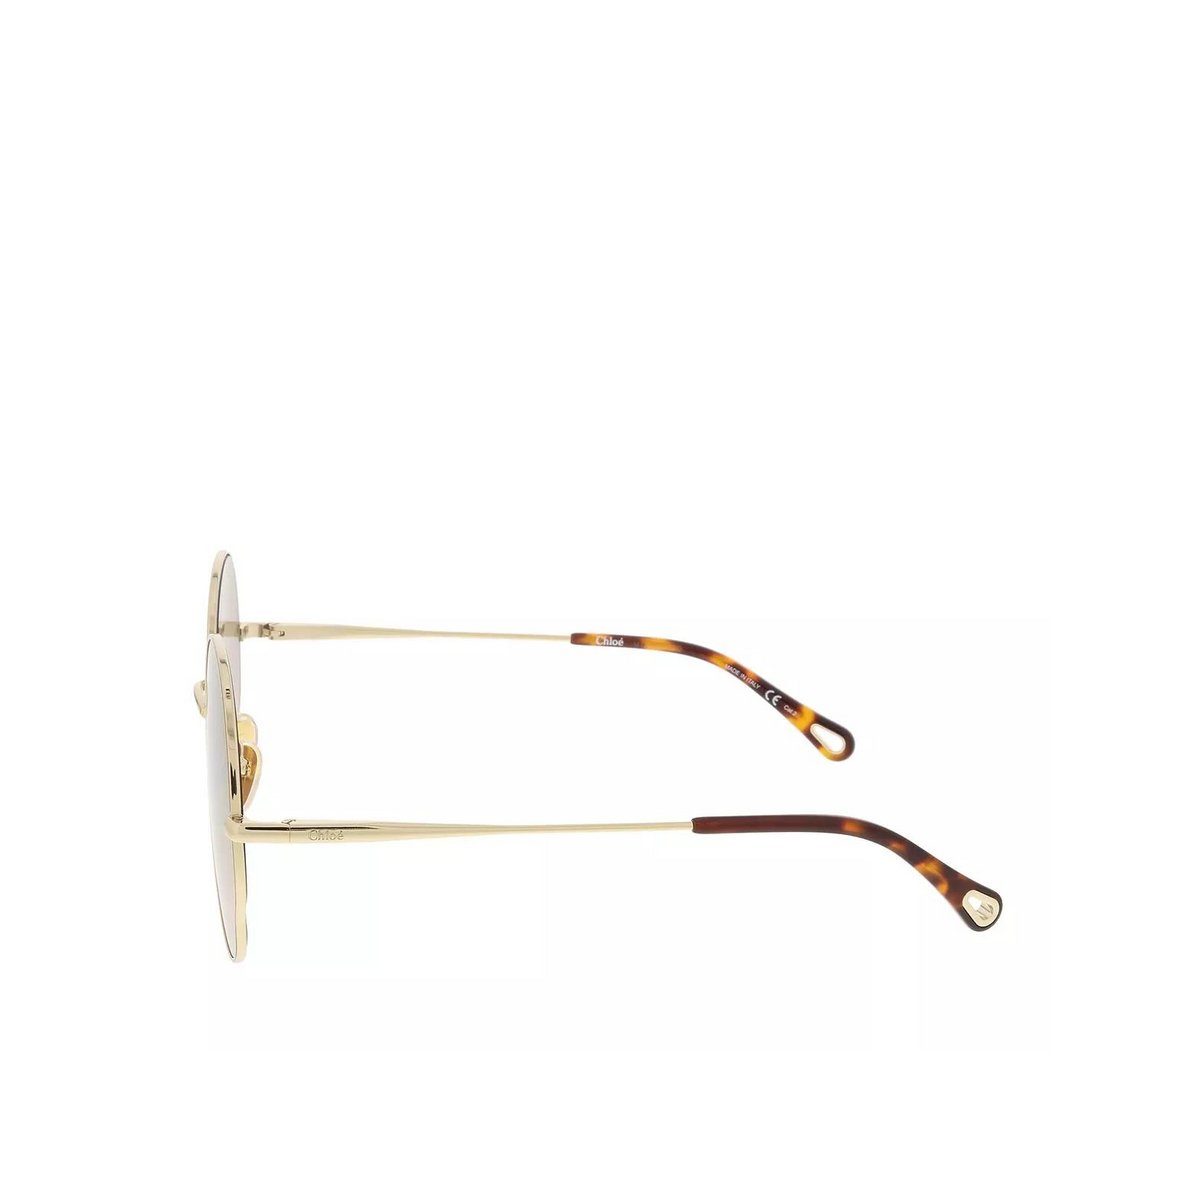 Chloé (1-St) Sonnenbrille kombi